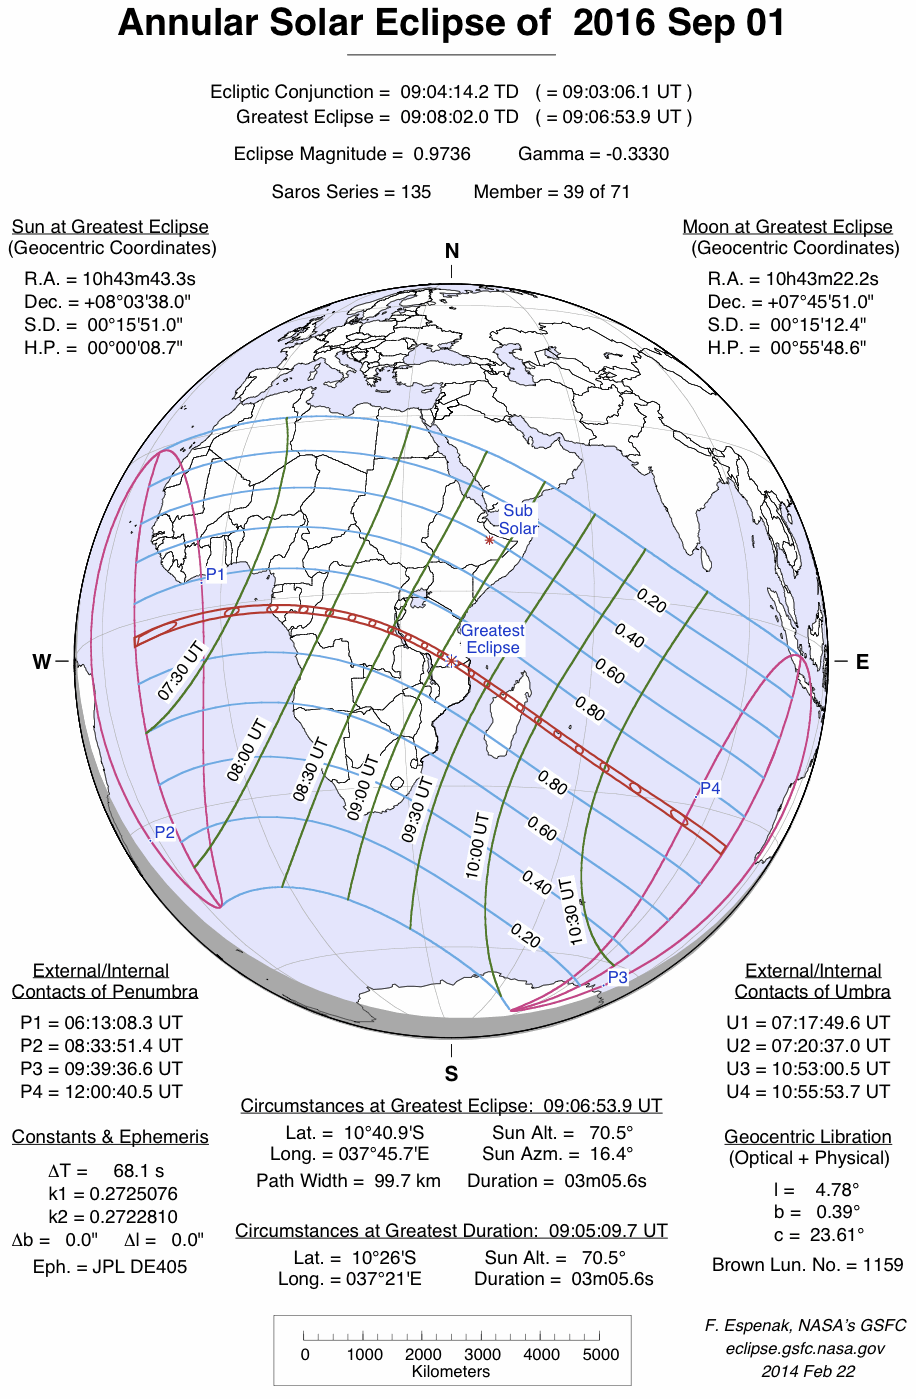 Esquema del eclipse del 1 de setiembre | Imagen Eclipse Predictions by Fred Espenak, NASA/GSFC